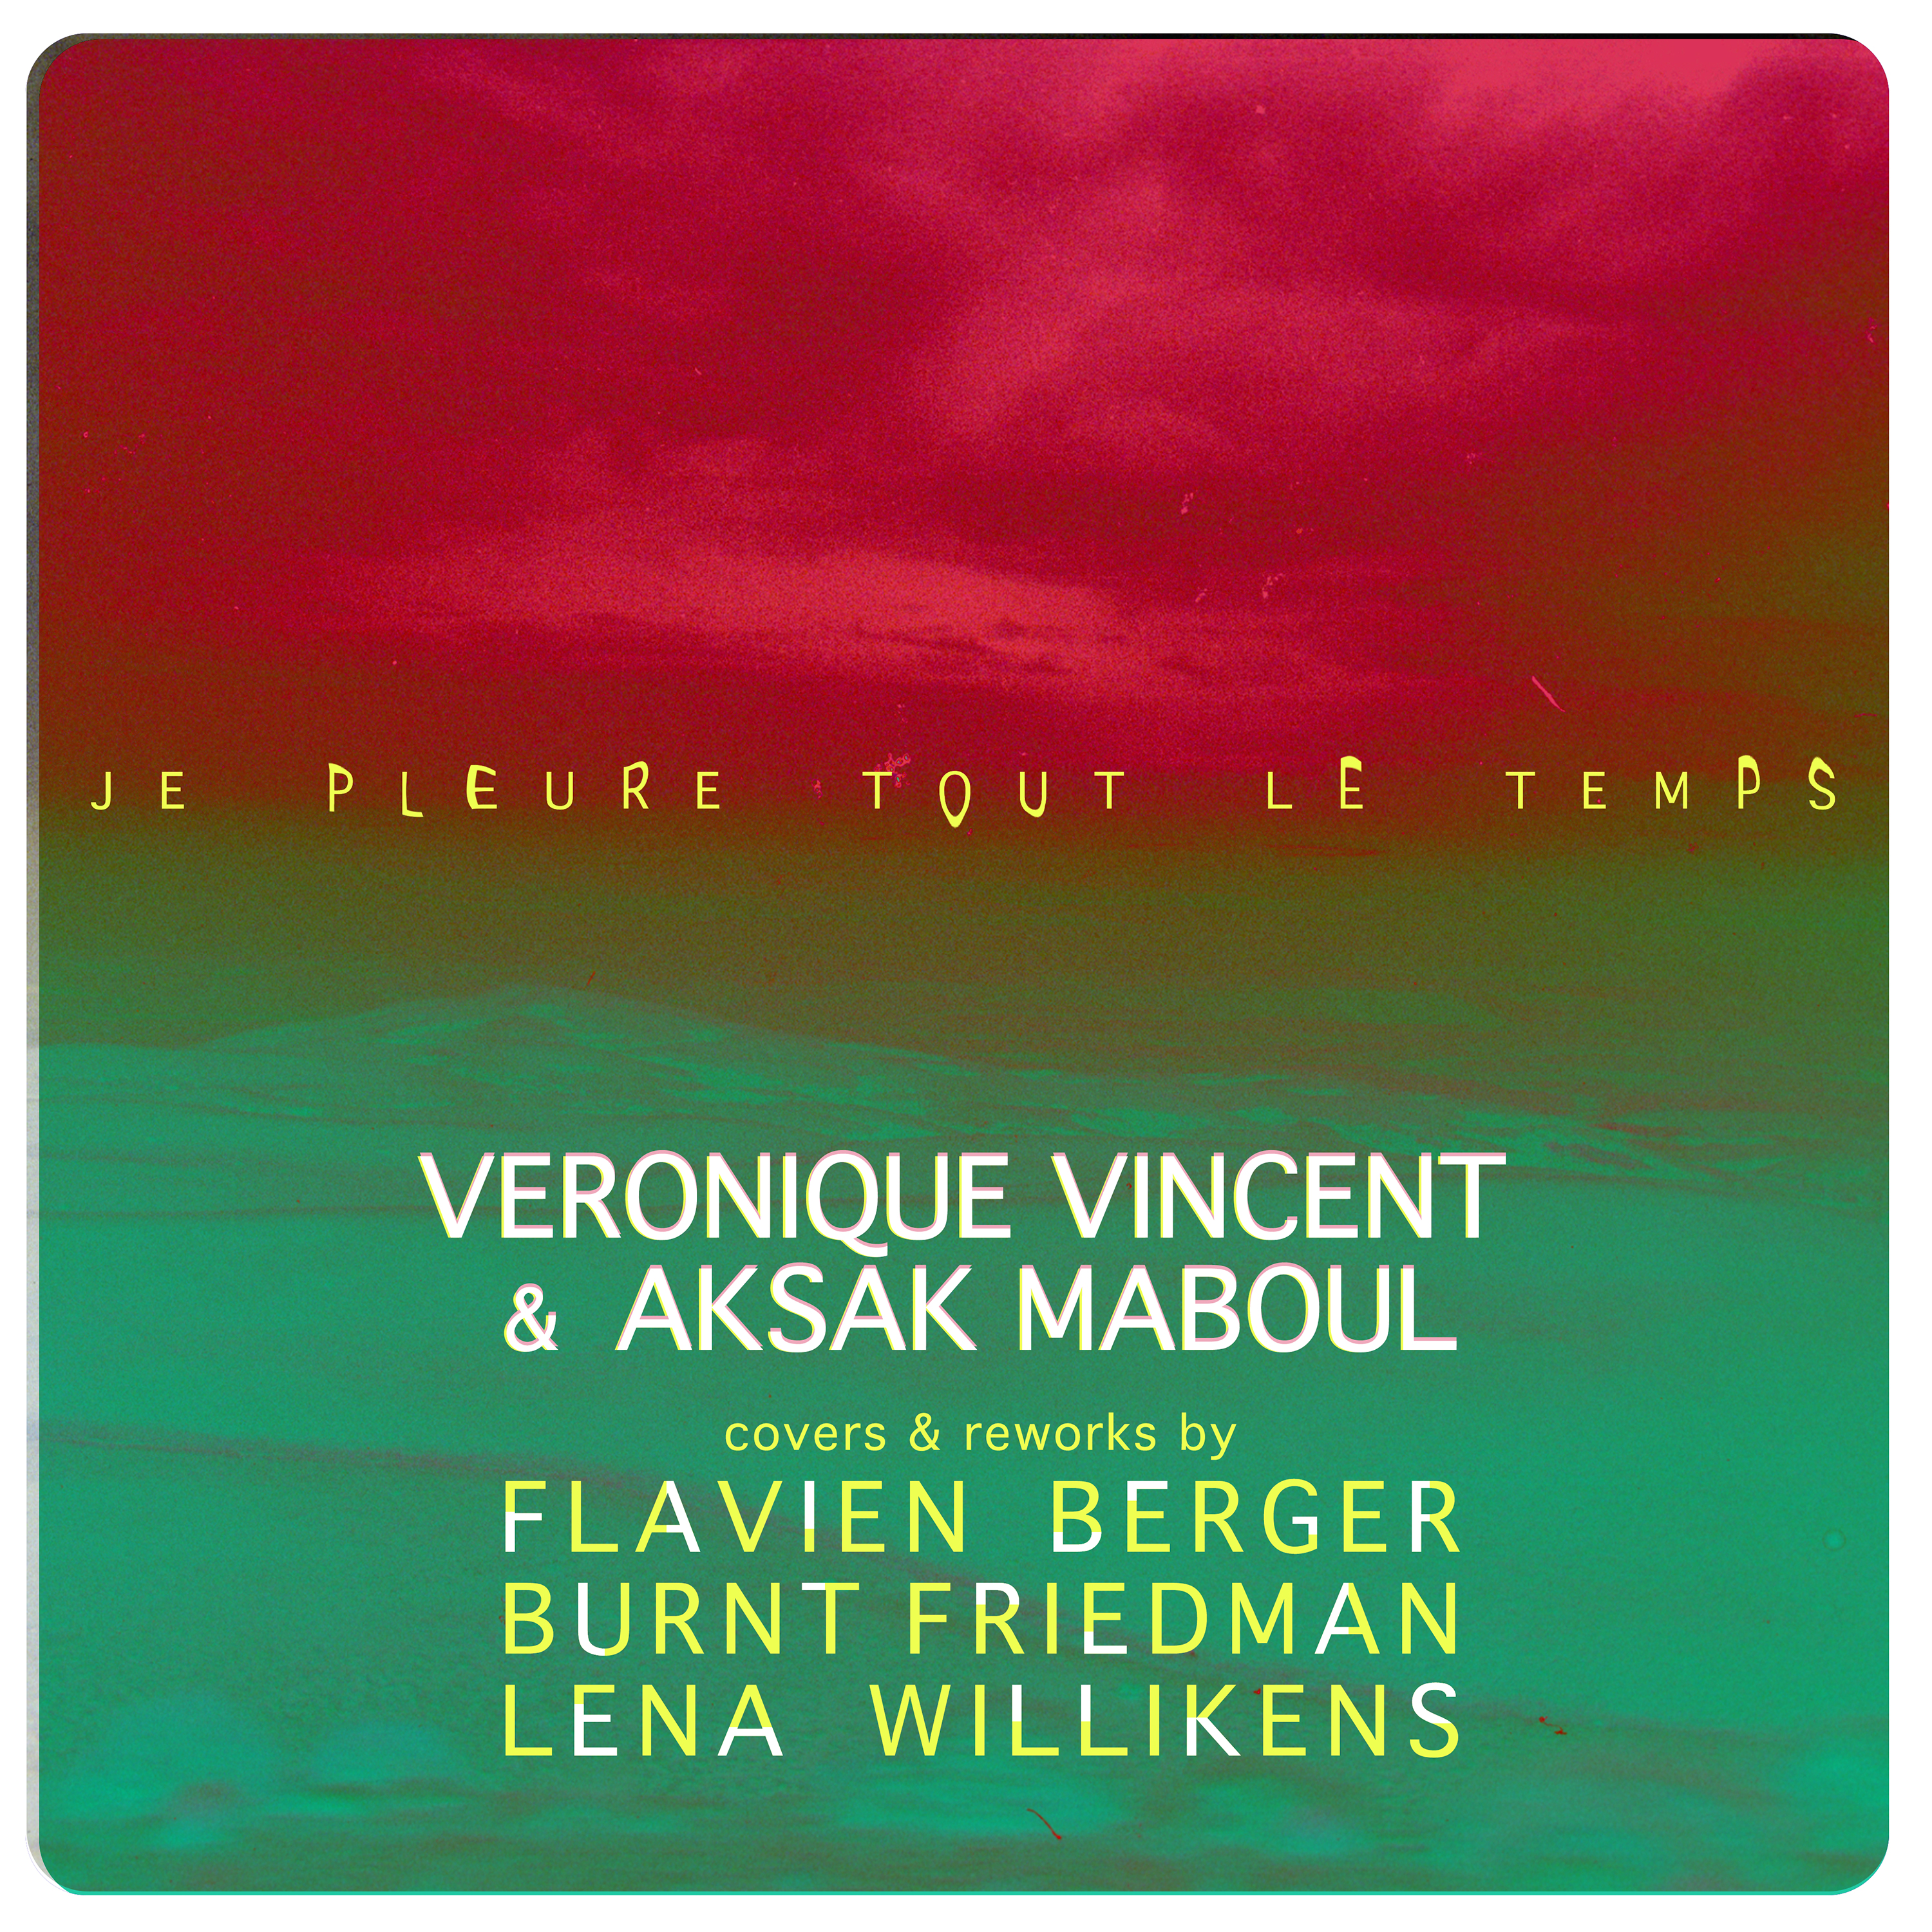 VéRONIQUE VINCENT & AKSAK MABOUL - Je pleure tout le temps EP (covers & reworks) feat. Flavien Berger, Burnt Friedman & Lena Willikens 